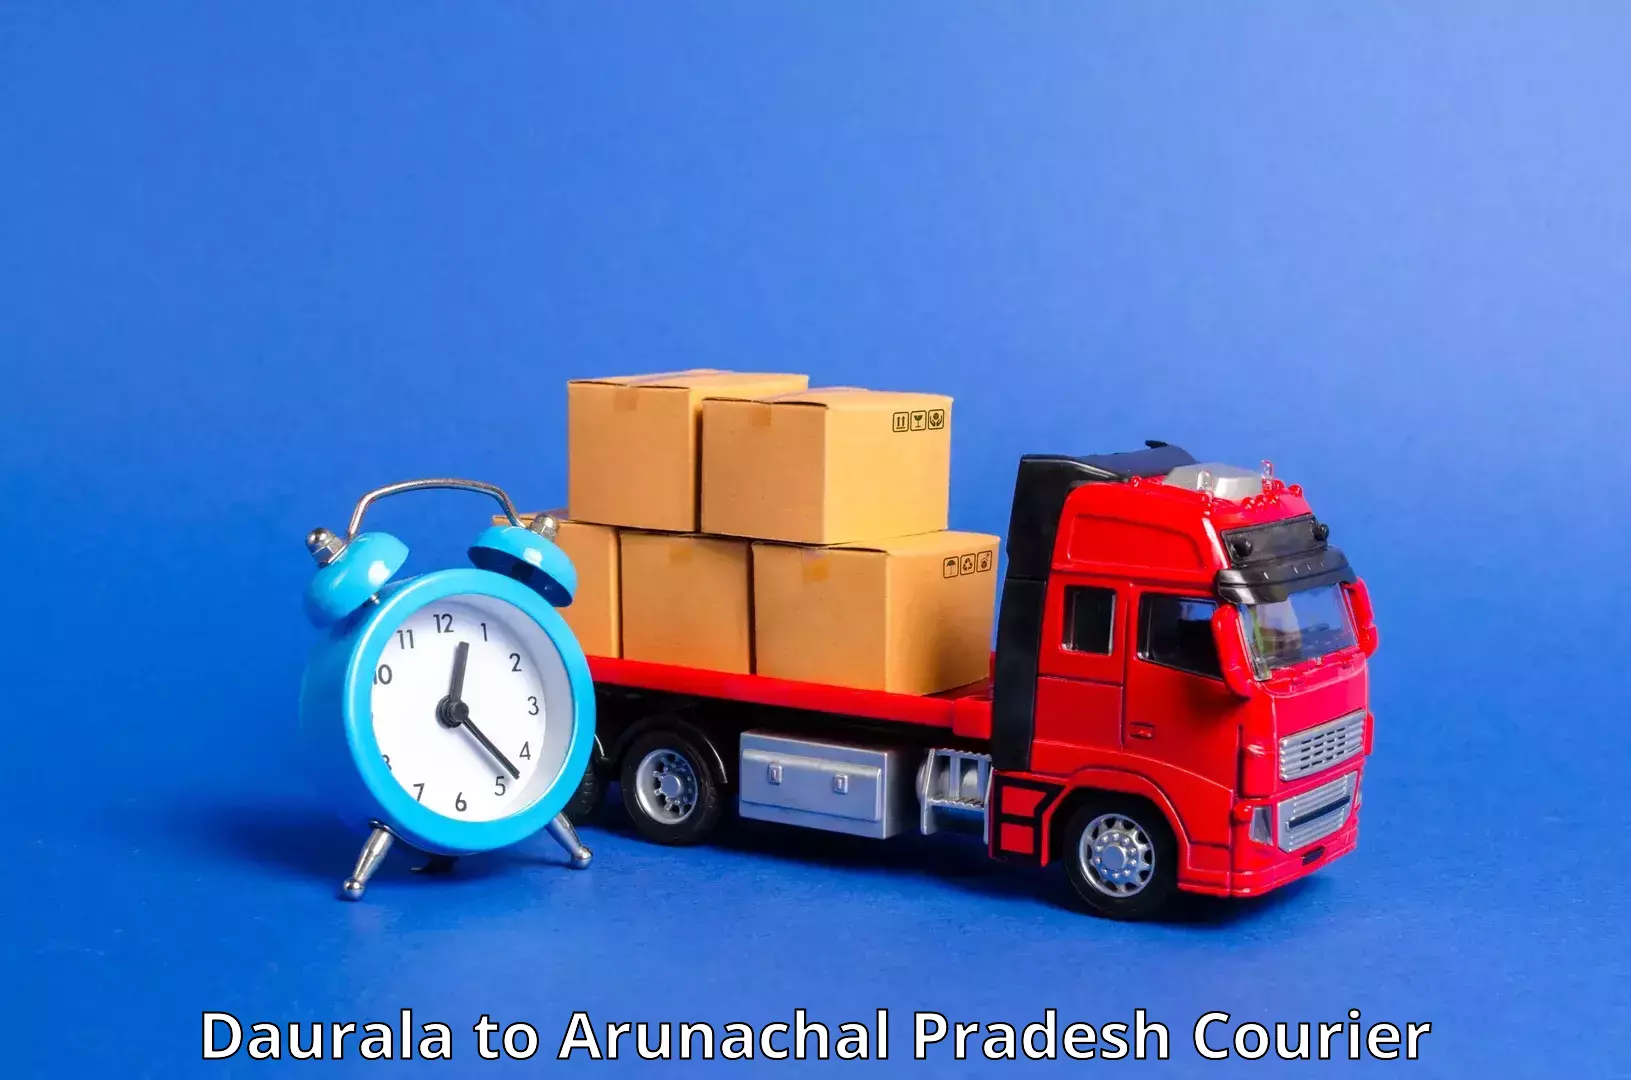 Speedy delivery service Daurala to Arunachal Pradesh